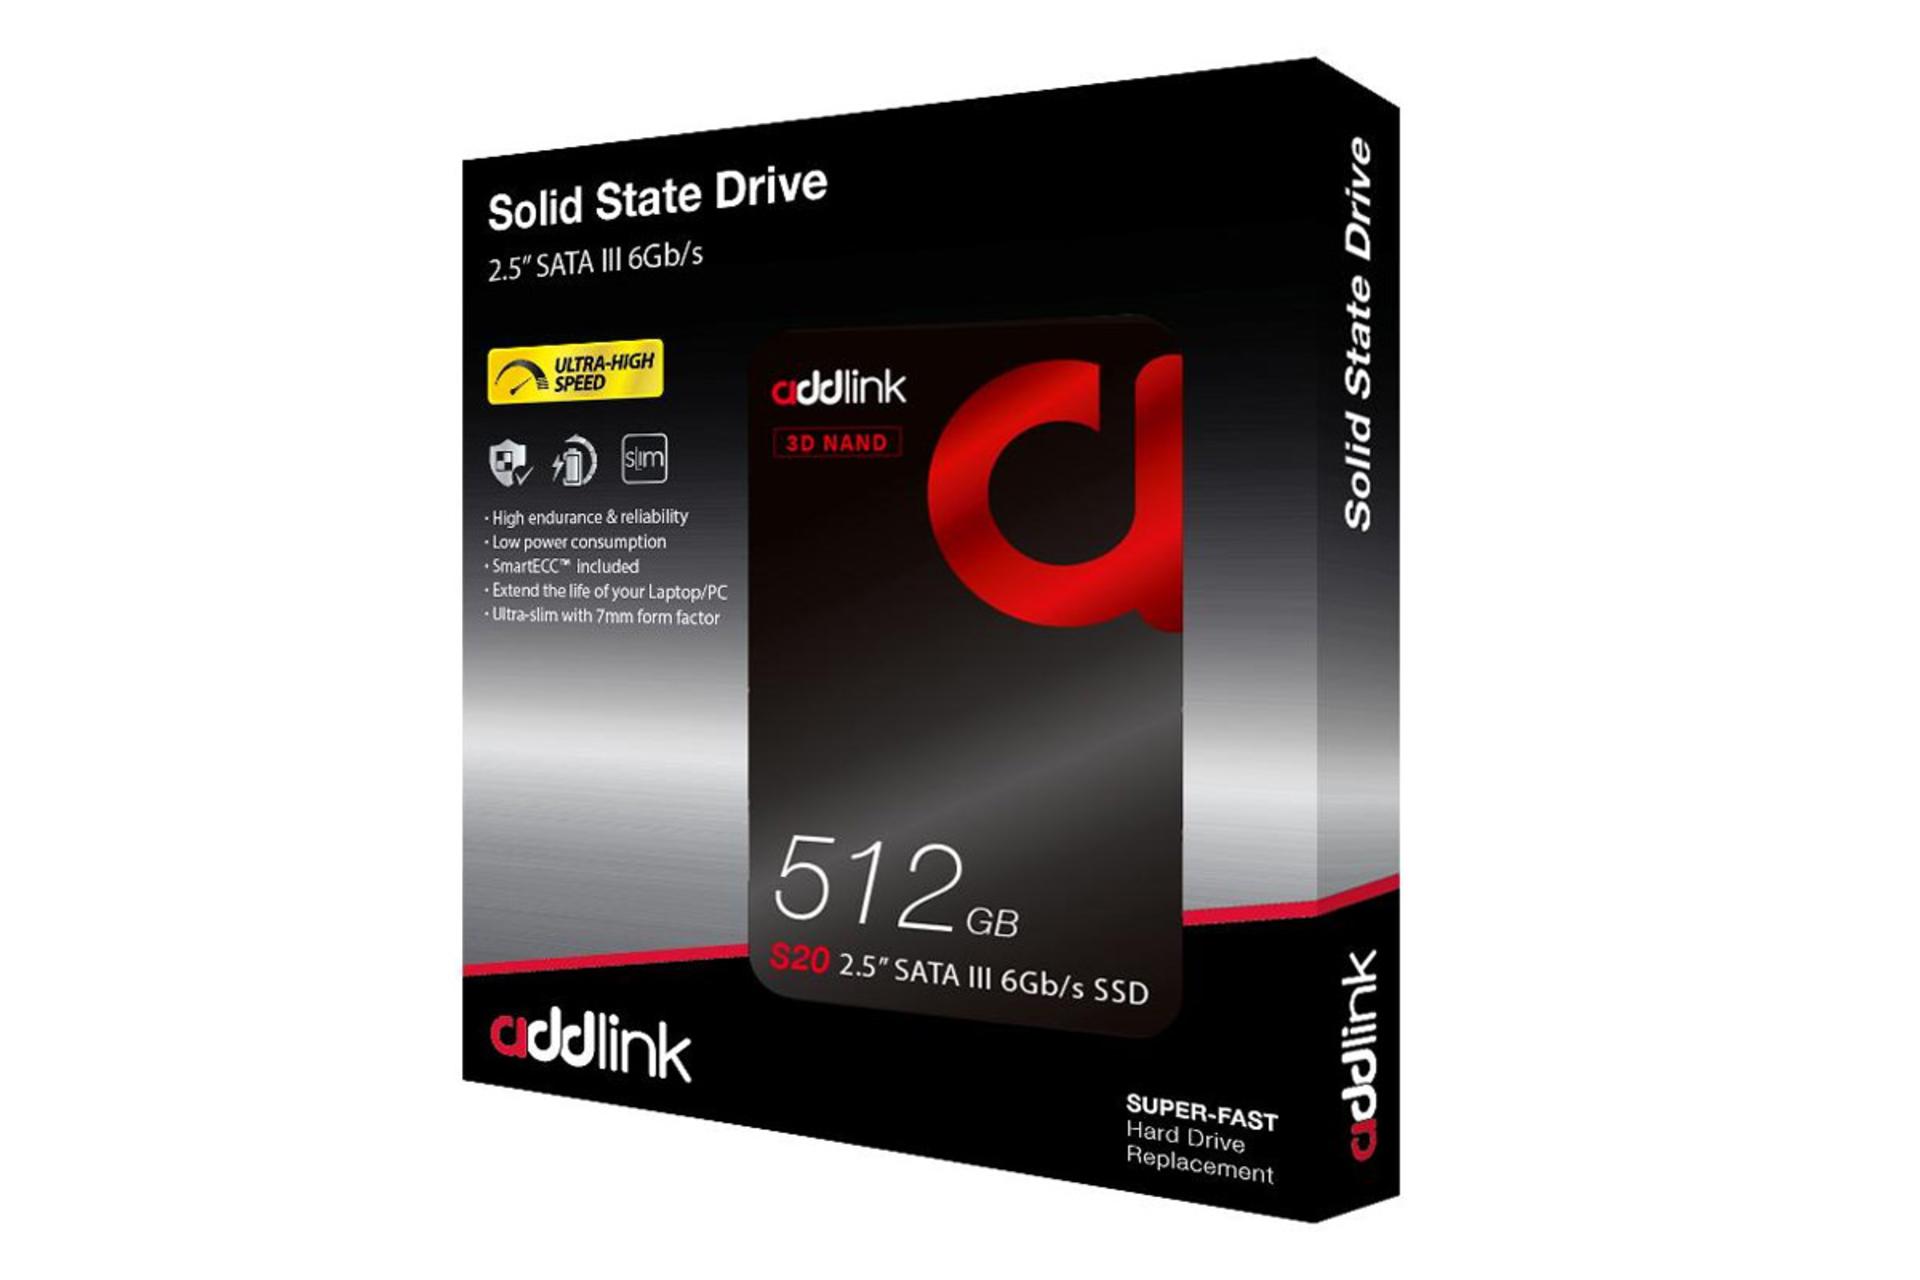 جعبه SSD ادلینک S20 SATA 2.5 Inch ظرفیت 512 گیگابایت